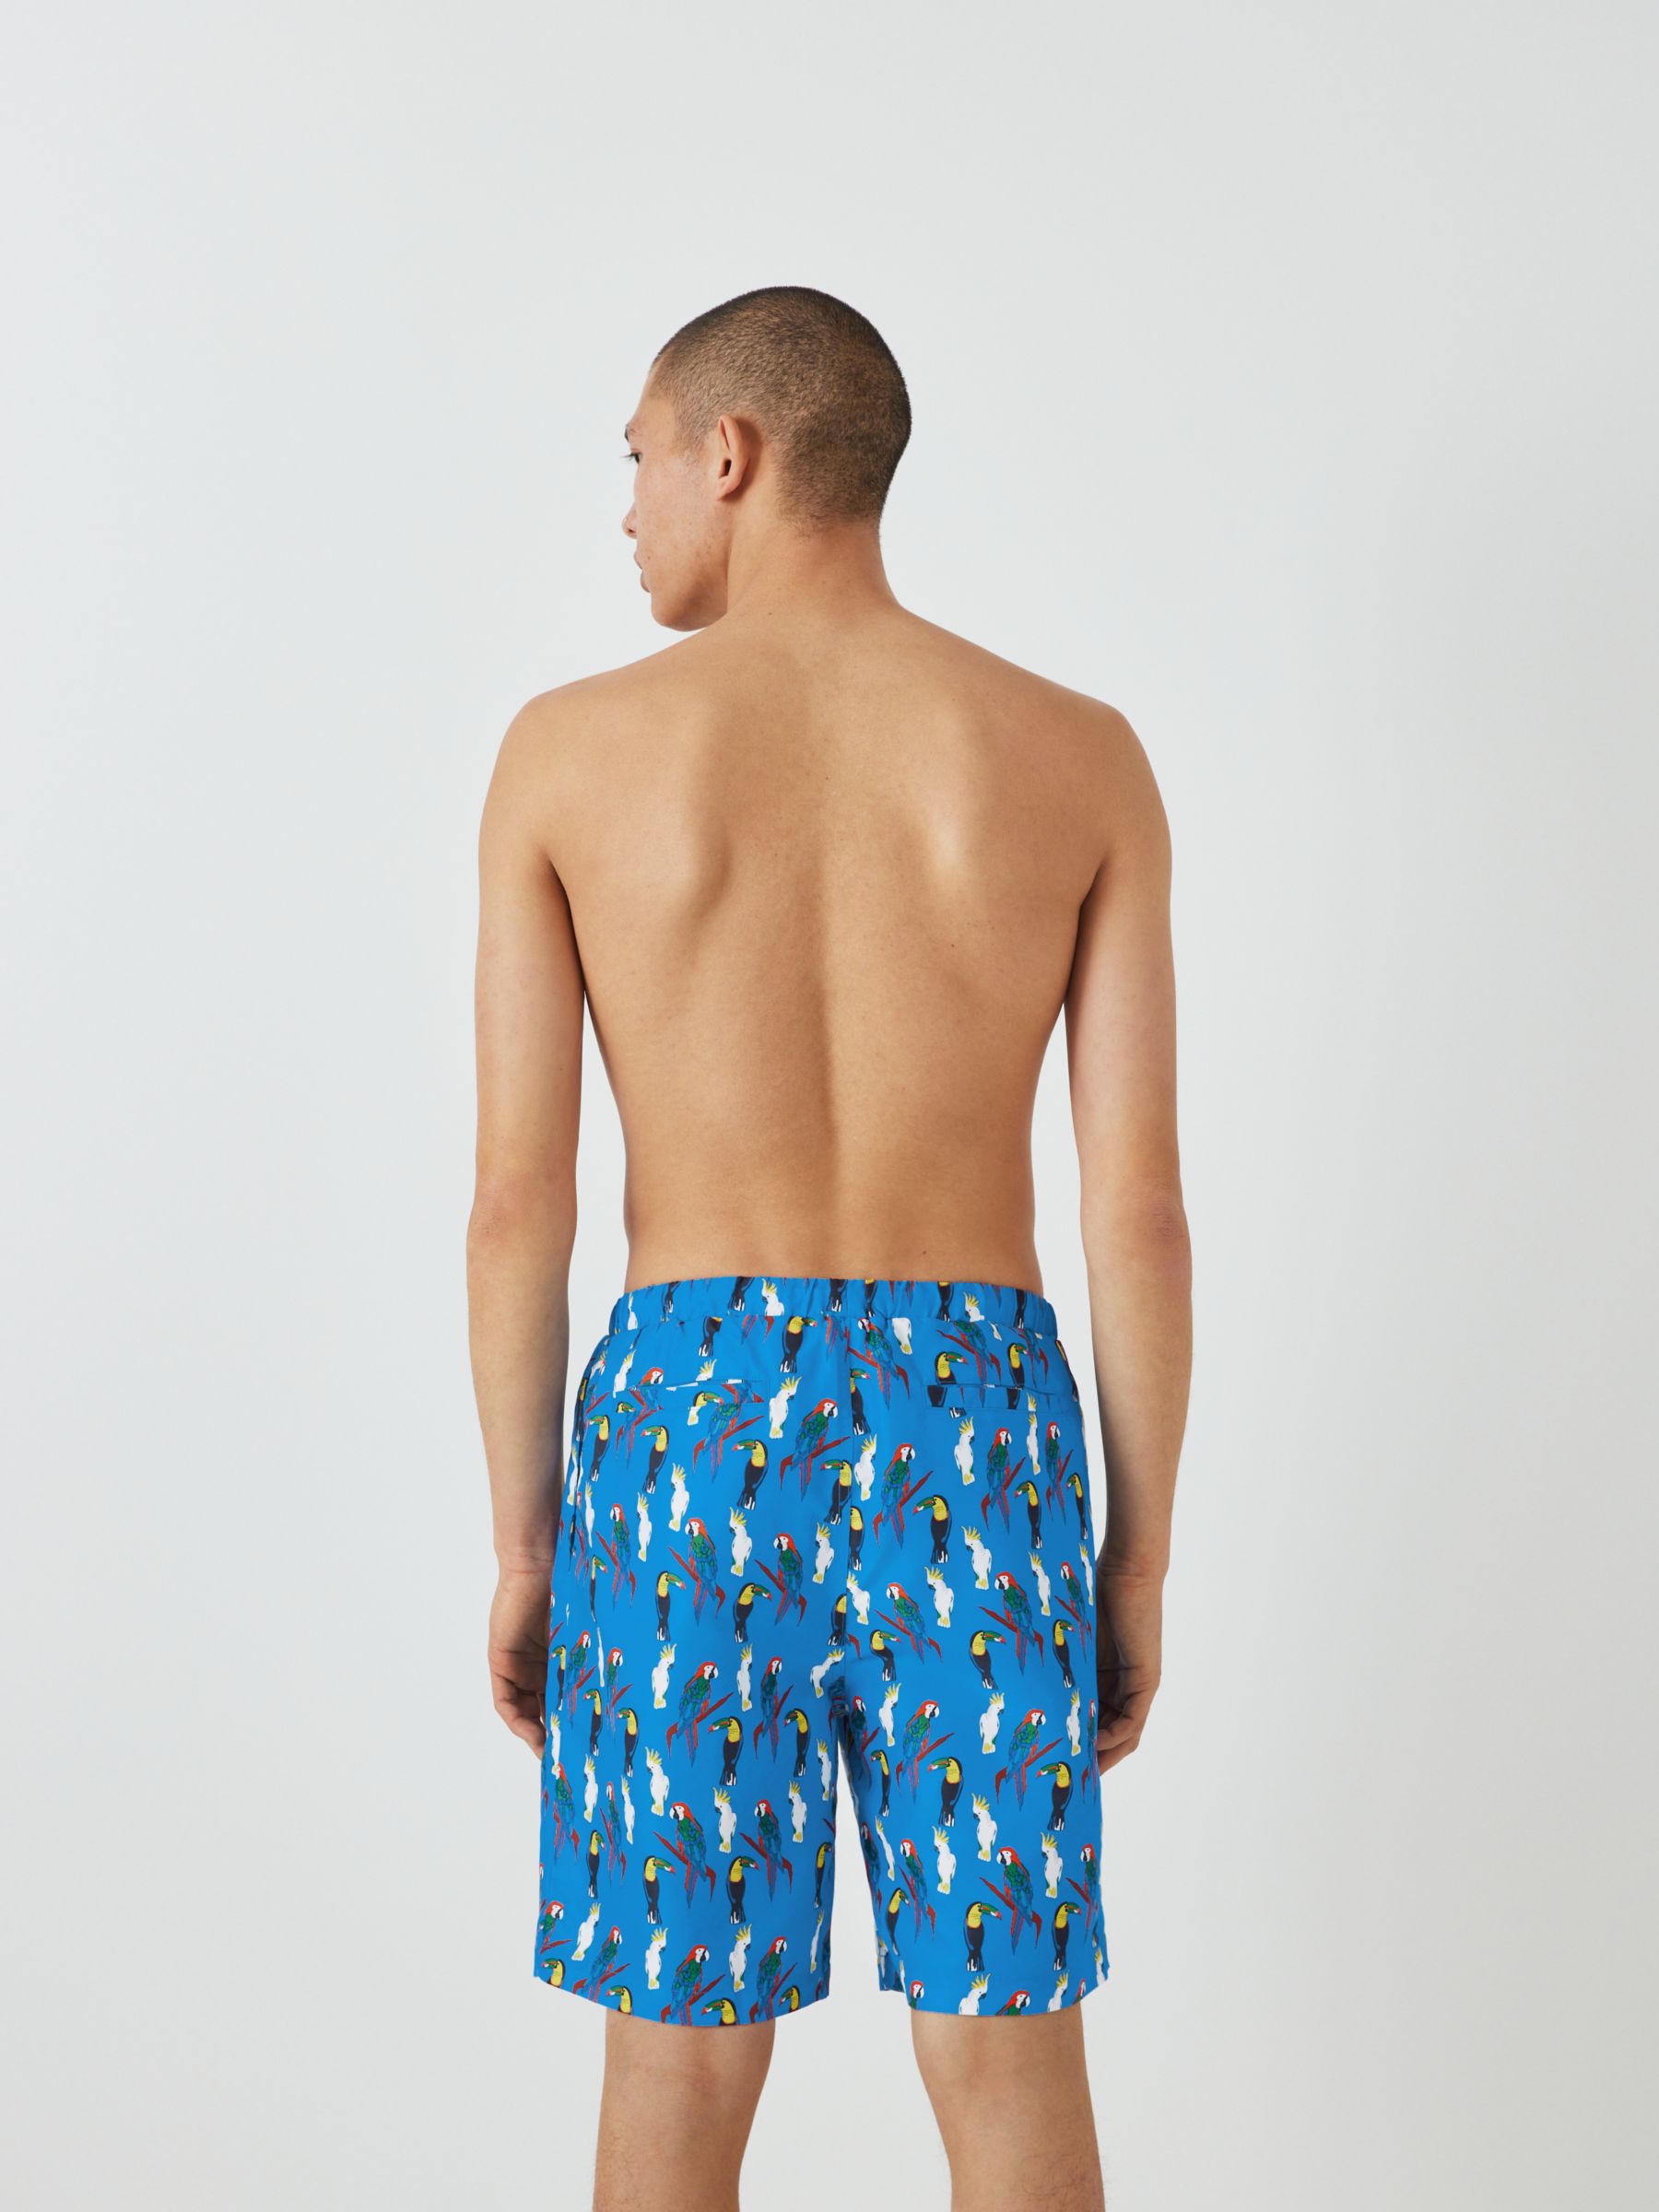 Their Nibs Tropical Bird Print Swim Shorts, Blue/Multi, L